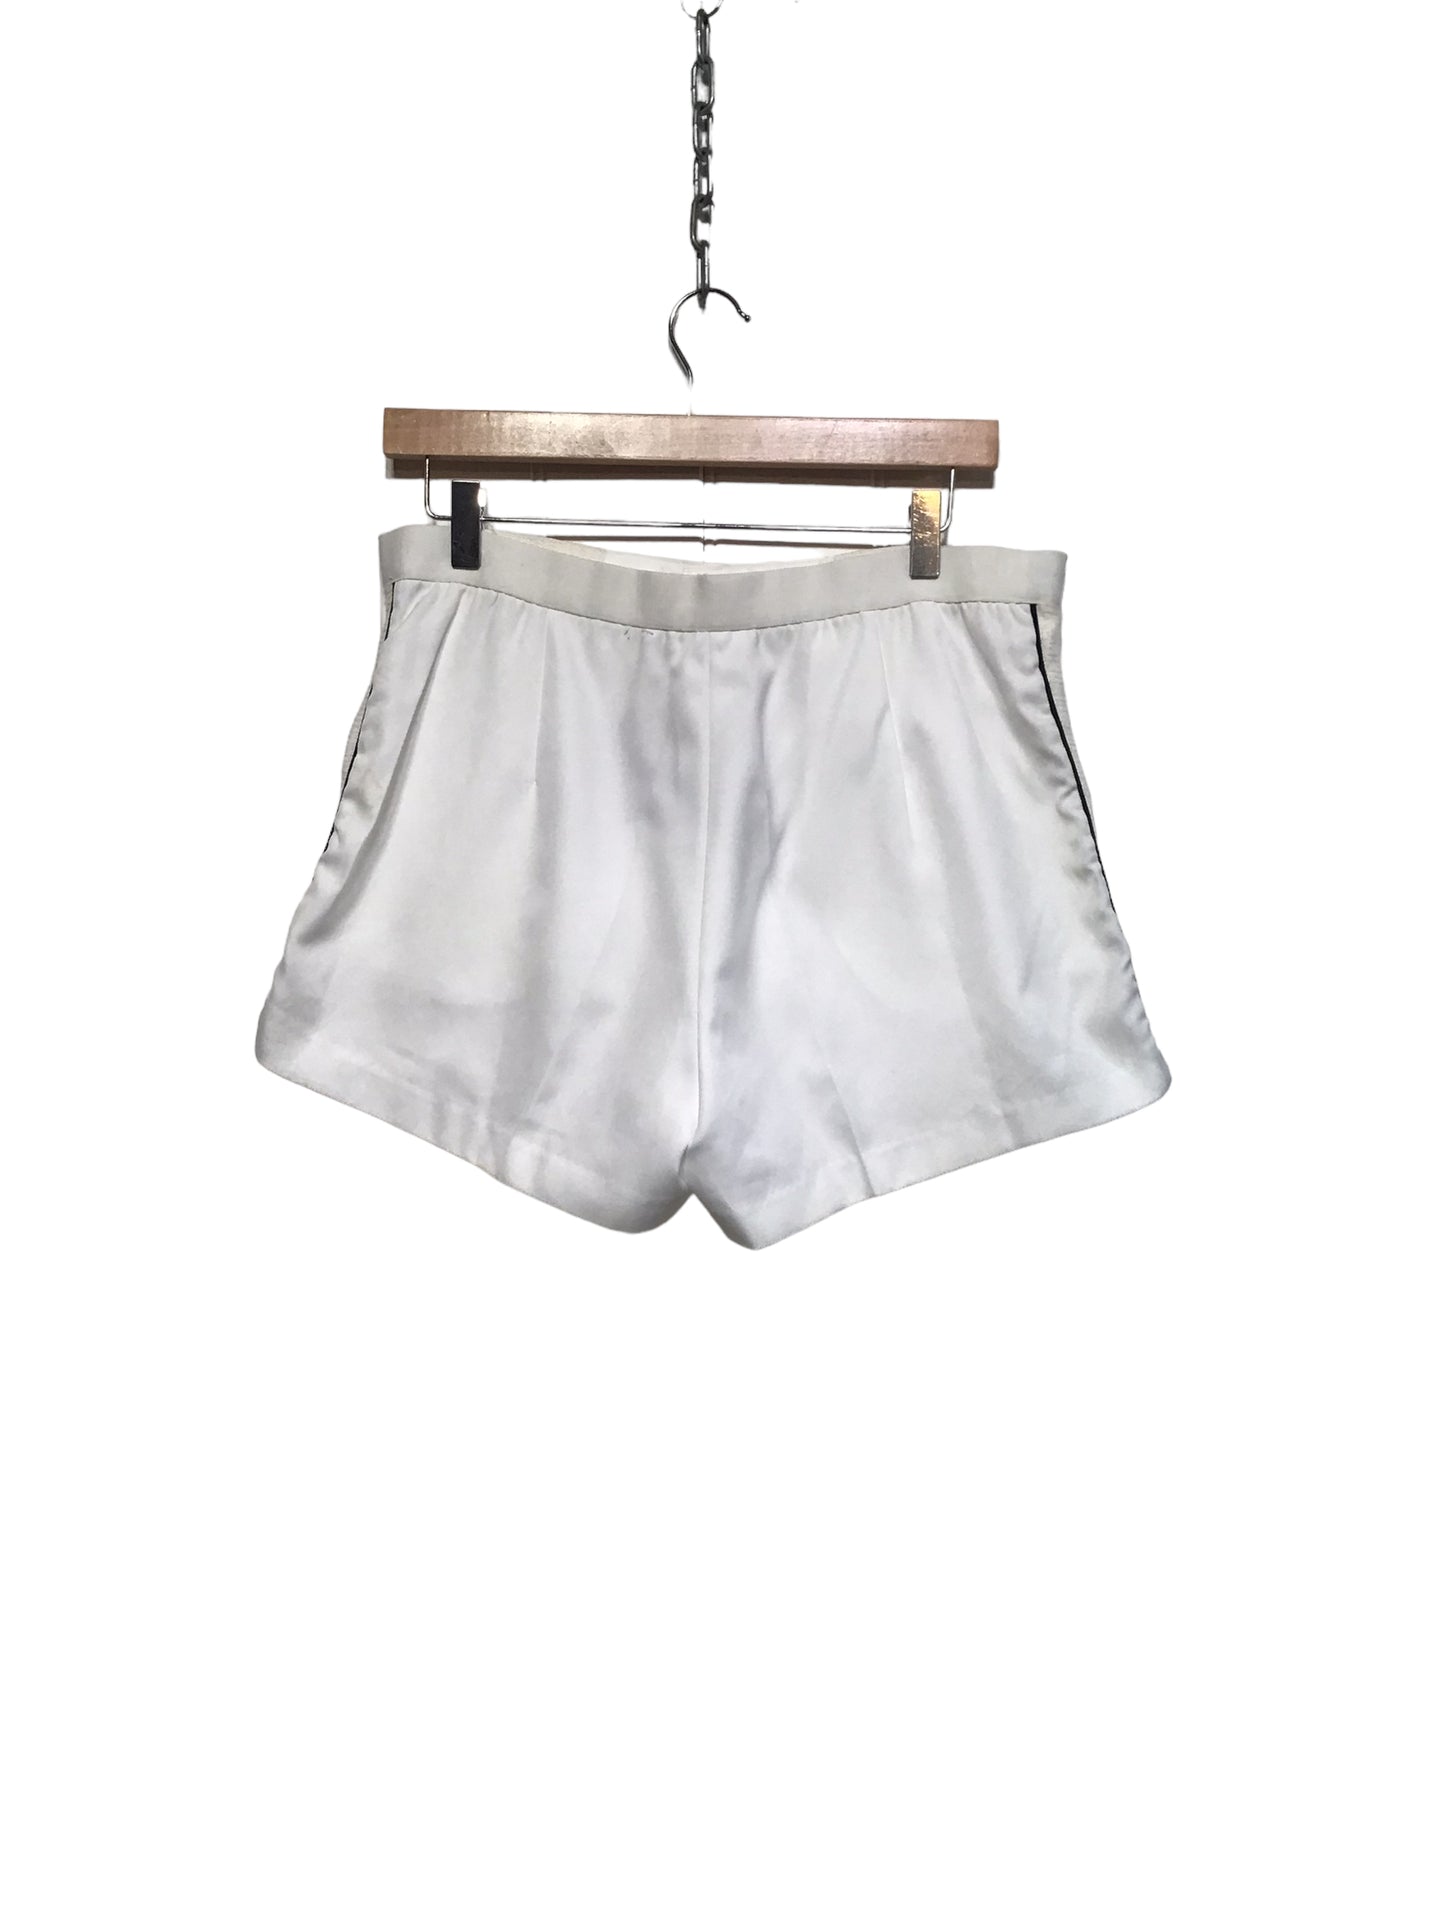 White Button Shorts (Size L)